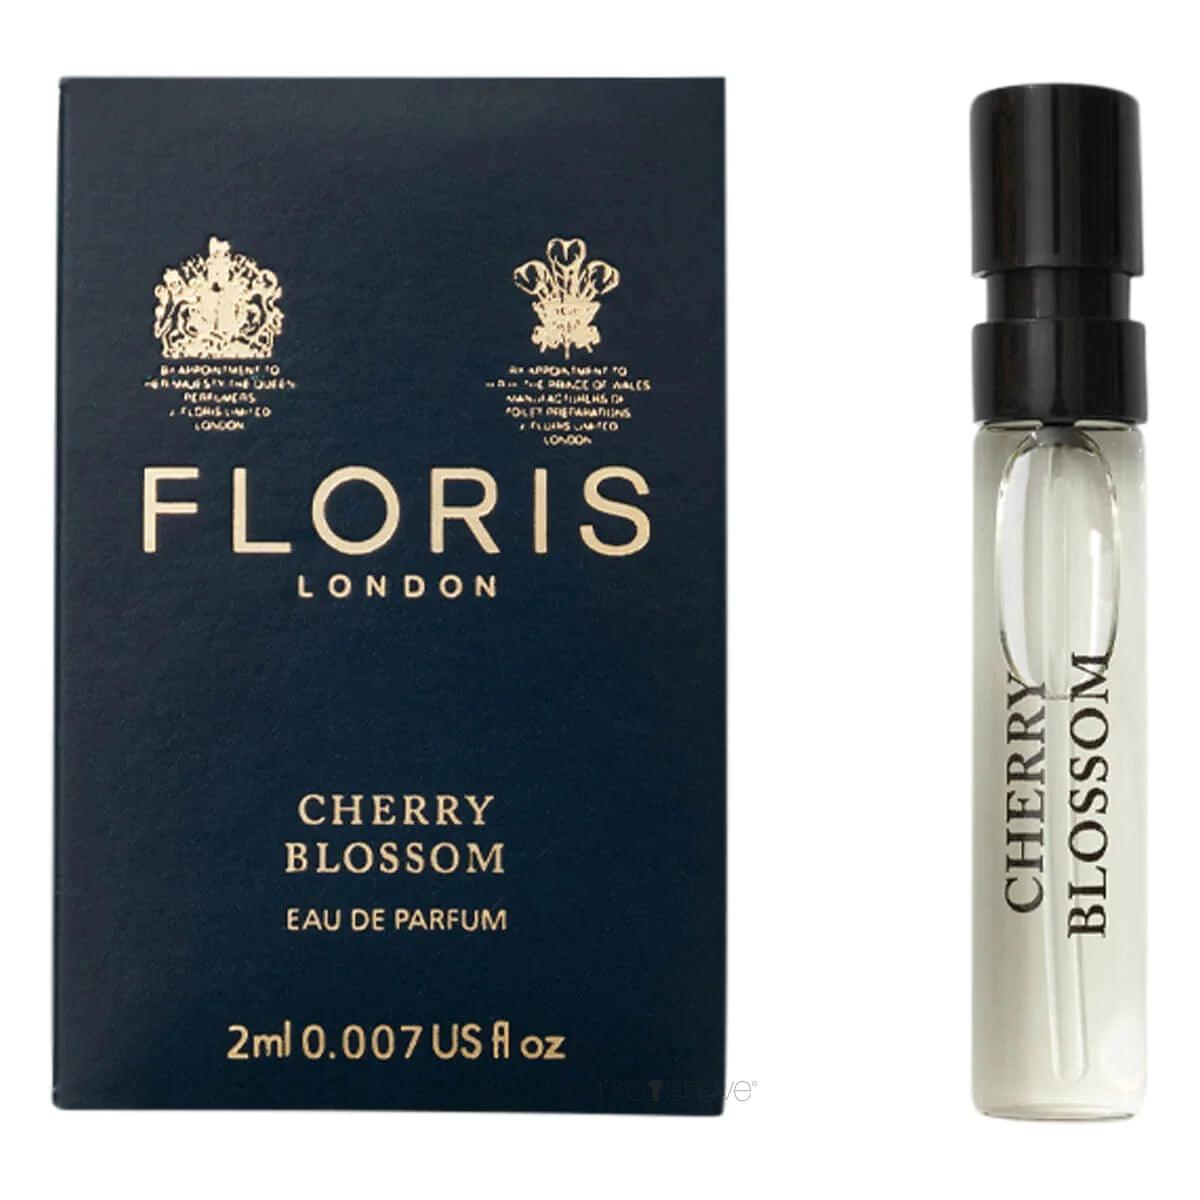 Floris Cherry Blossom, Eau de Parfum, 10 ml | Parfyme | Floris London | JK SHOP | JK Barber og herre frisør | Lavepriser | Best